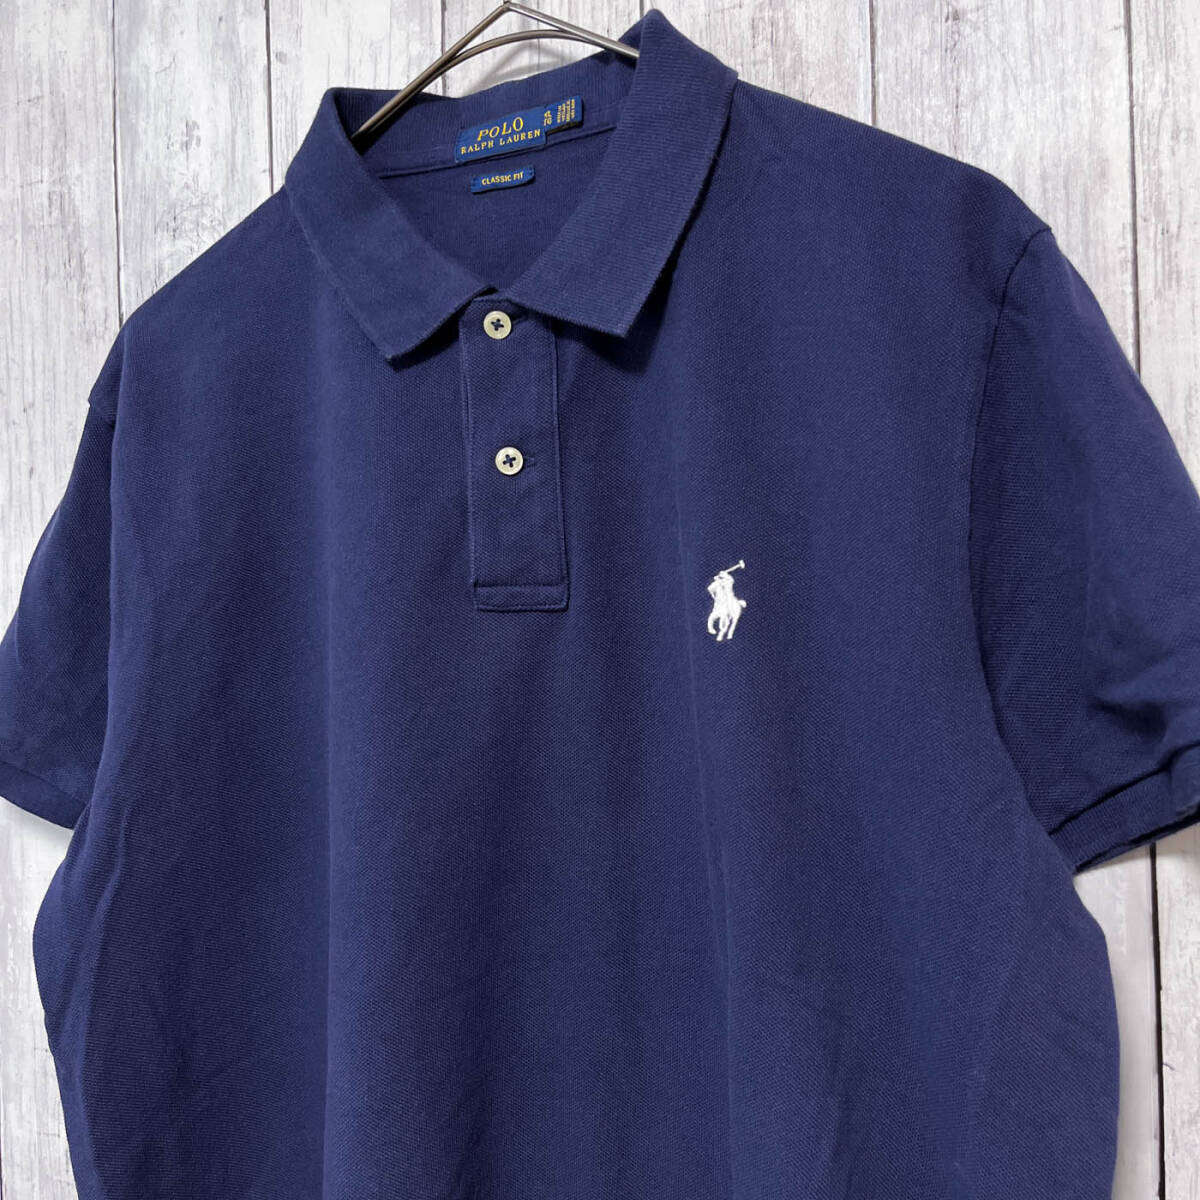  Ralph Lauren Ralph Lauren polo-shirt short sleeves shirt lady's one Point cotton 100% XL size 5-571